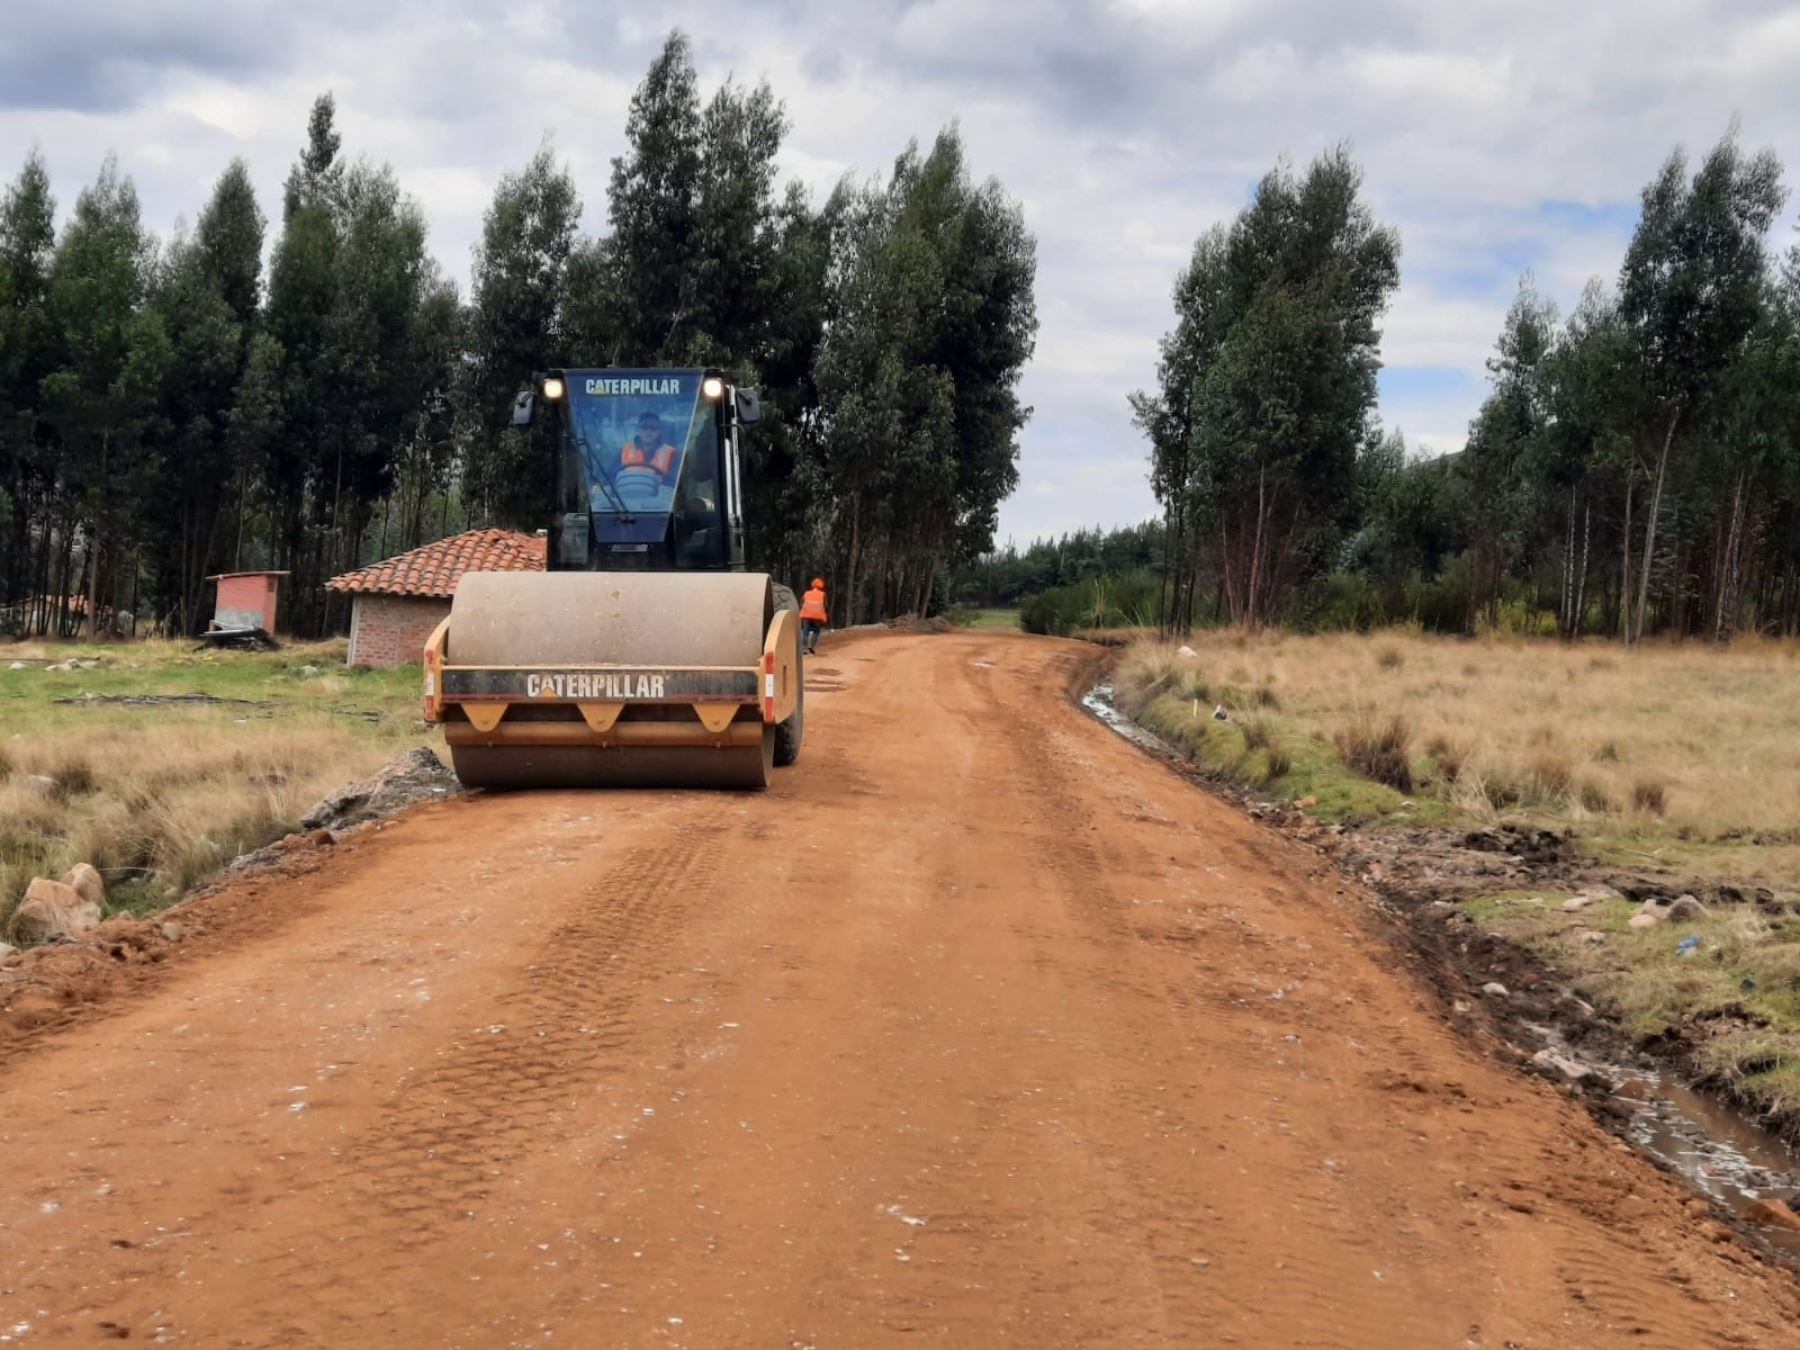 El Gobierno Regional de La Libertad y la Municipalidad de Buldibuyo firmaron un convenio para mejorar 70 kilómetros de carretera de ese distrito ubicado en la provincia de Pataz. ANDINA/Difusión